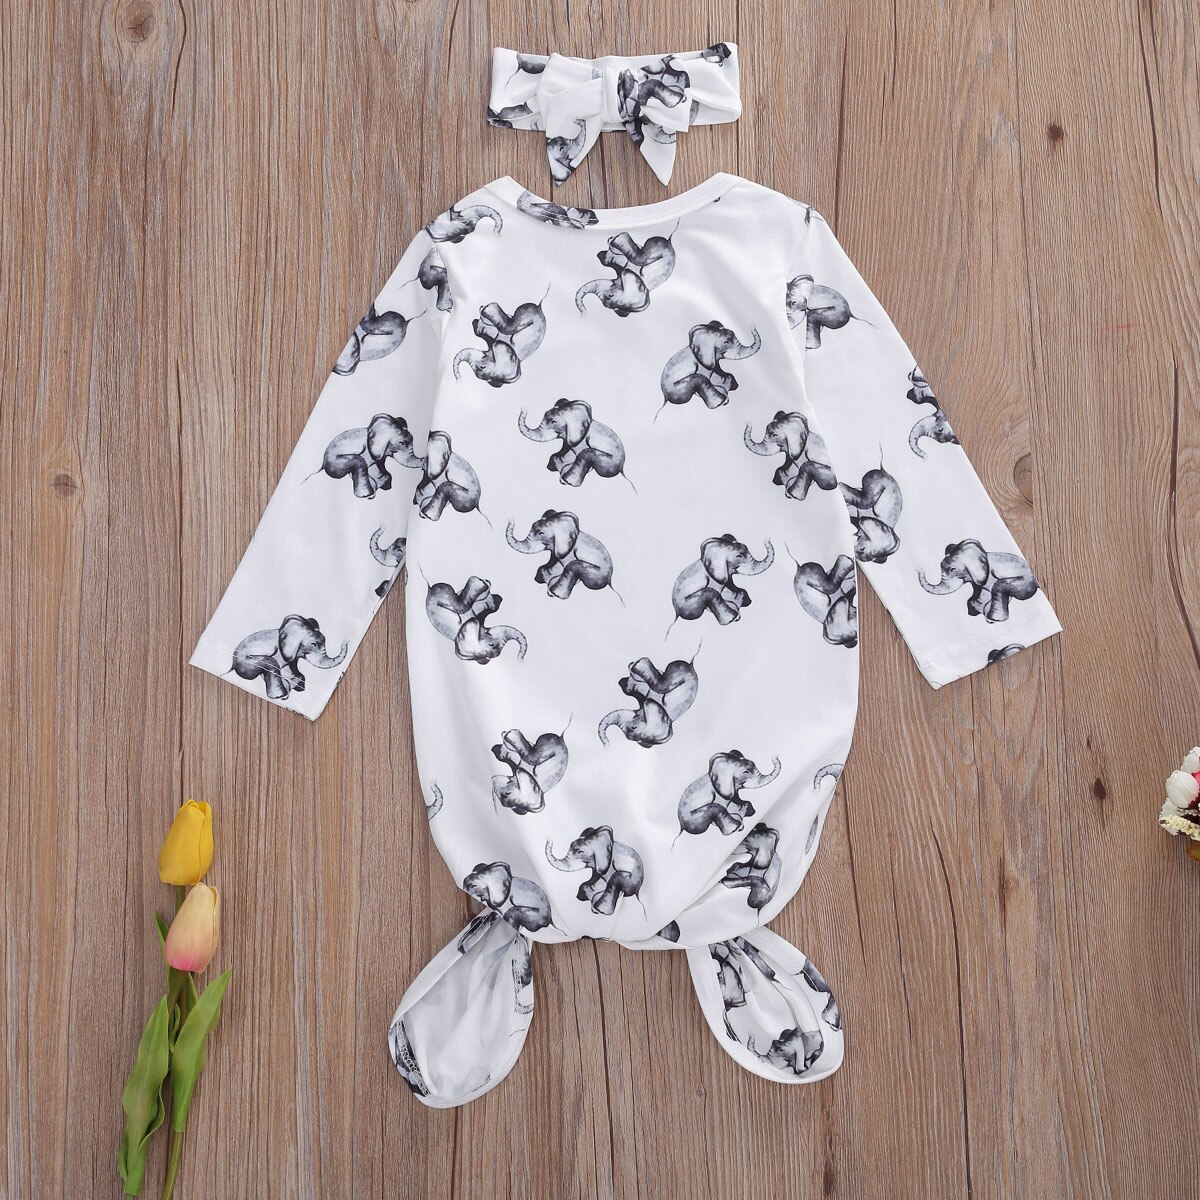 Baby pige nattøj dejlige elefant print natkjole med pandebånd sæt kommer hjem tøj